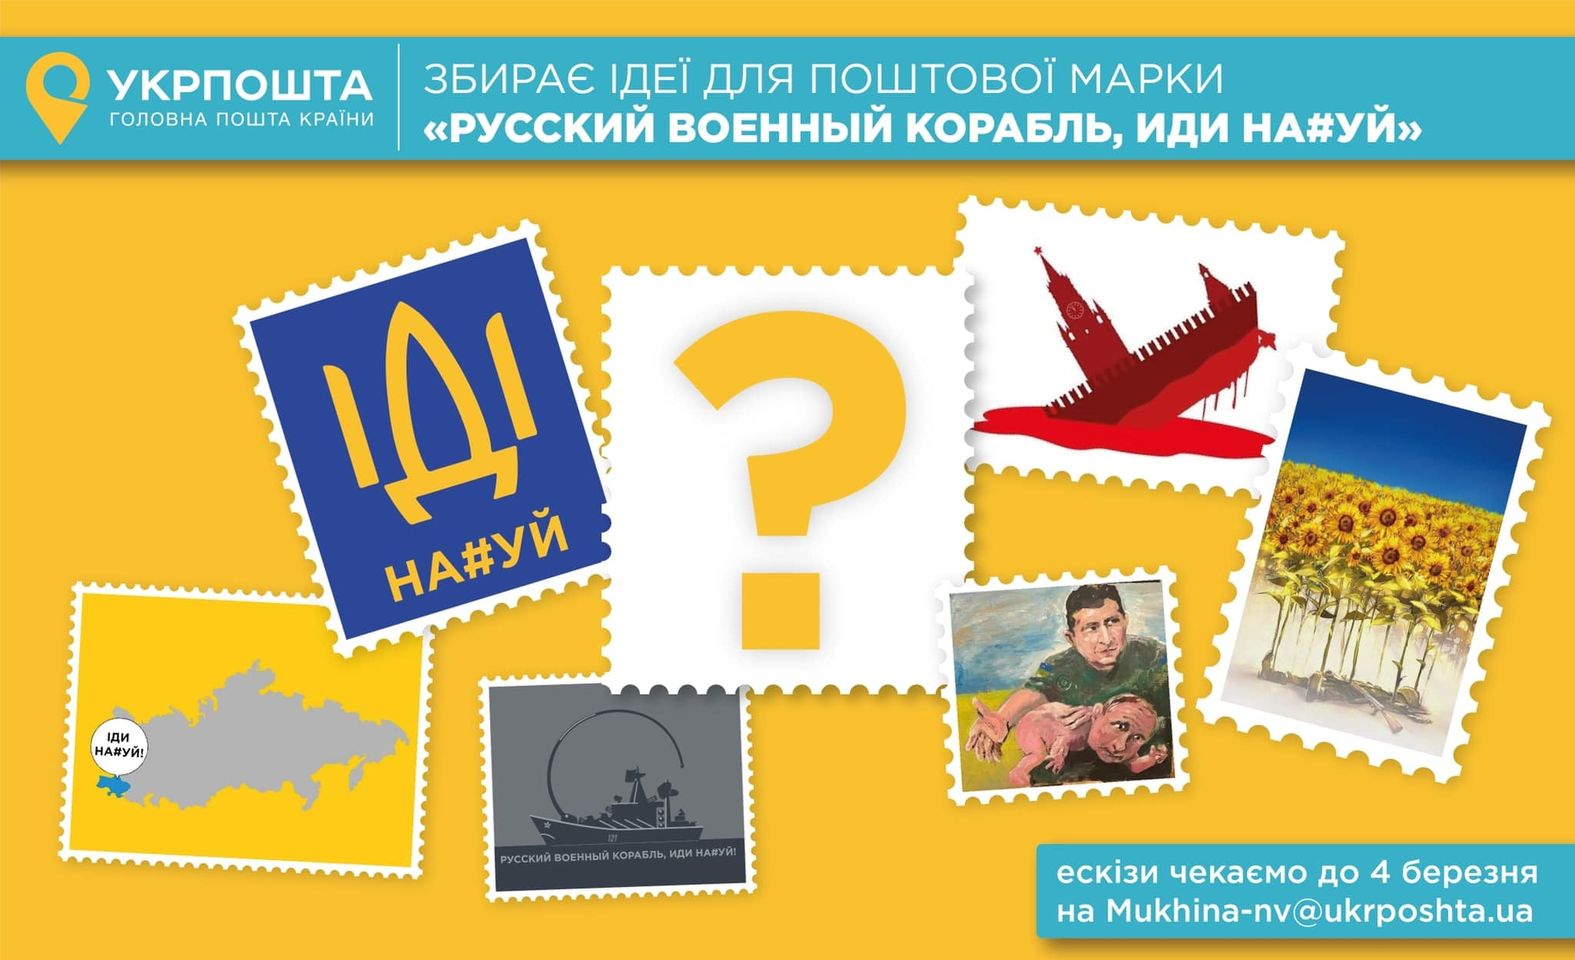 Укрпошта випустить міжнародну марку “Русский военный корабль, иди на*уй!”